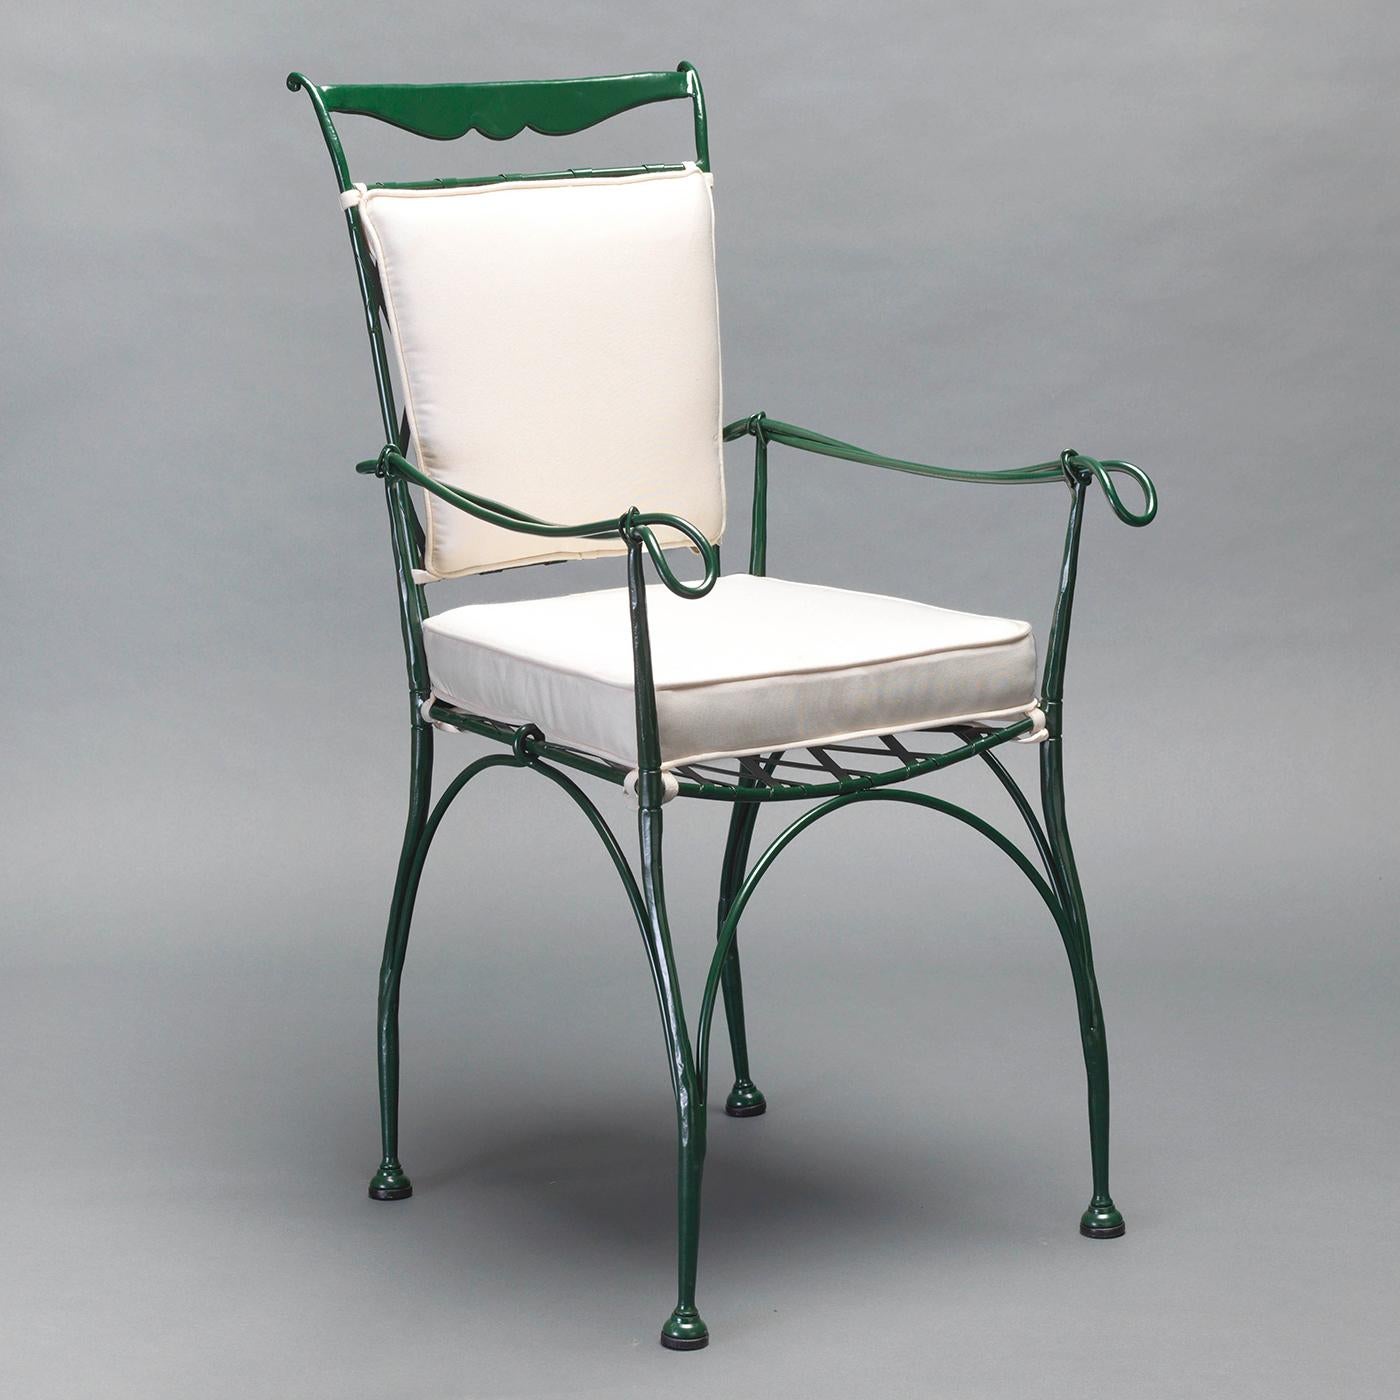 Le design saisissant de cette magnifique chaise avec accoudoirs prend vie grâce au savoir-faire magistral des artisans d'Officina Ciani, qui ont forgé l'acier inoxydable pour obtenir des formes douces et des silhouettes délicates qui évoquent la